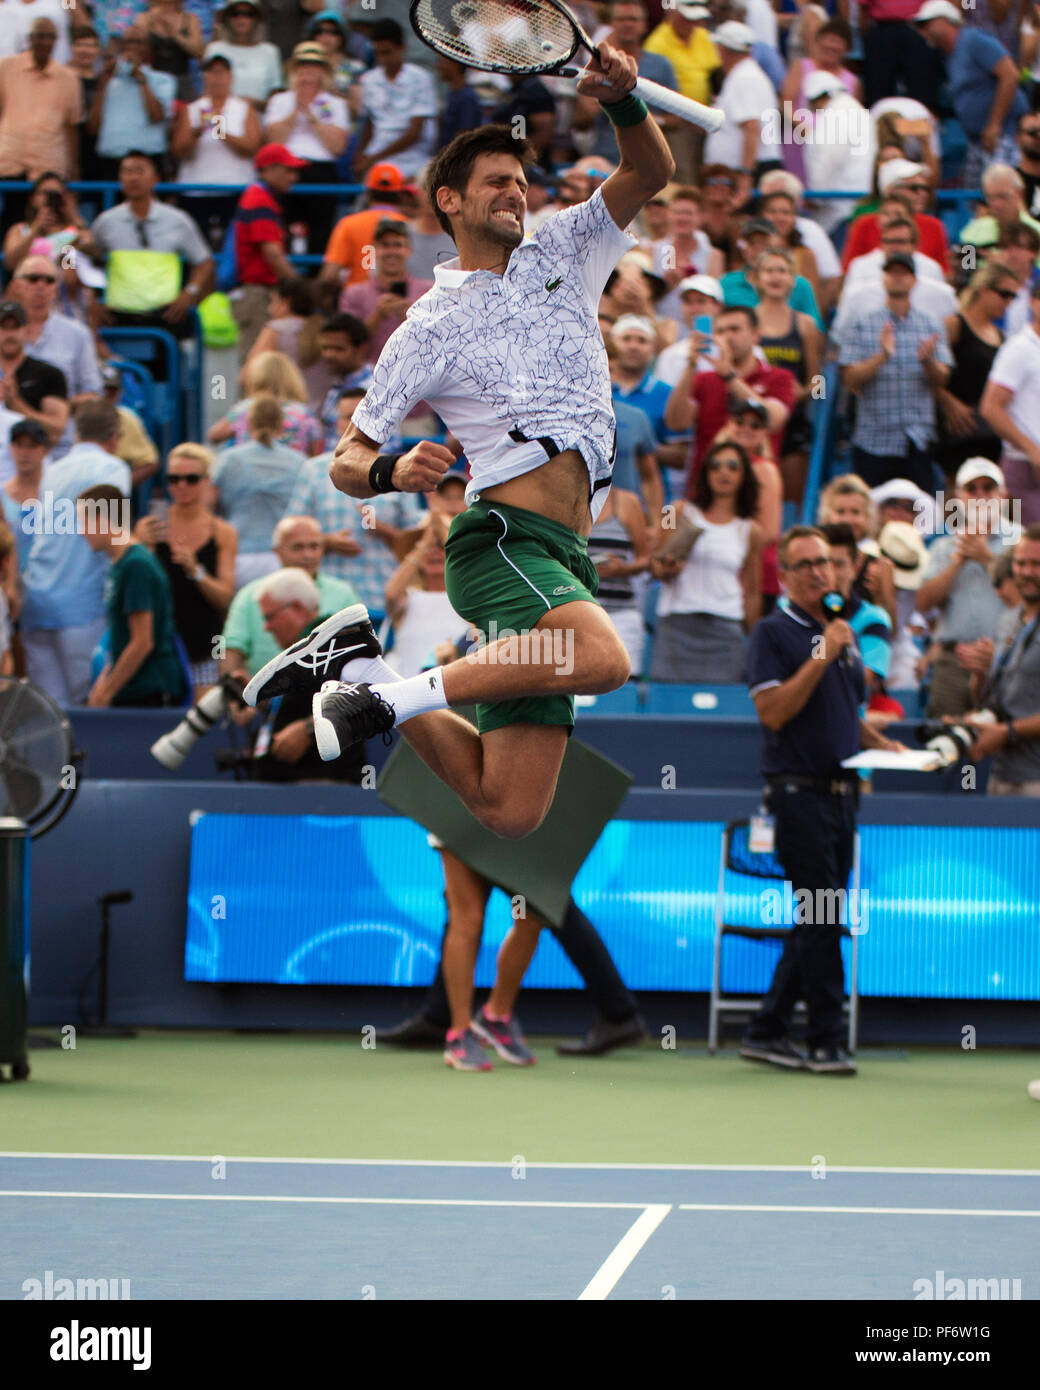 Mason, Ohio, USA. 19 août 2018 : Novak Djokovic (SRB) célèbre sa victoire sur Roger Federer (SUI) à la région du sud-ouest de l'ouvrir à Mason, Ohio, USA. Brent Clark/Alamy Live News Banque D'Images